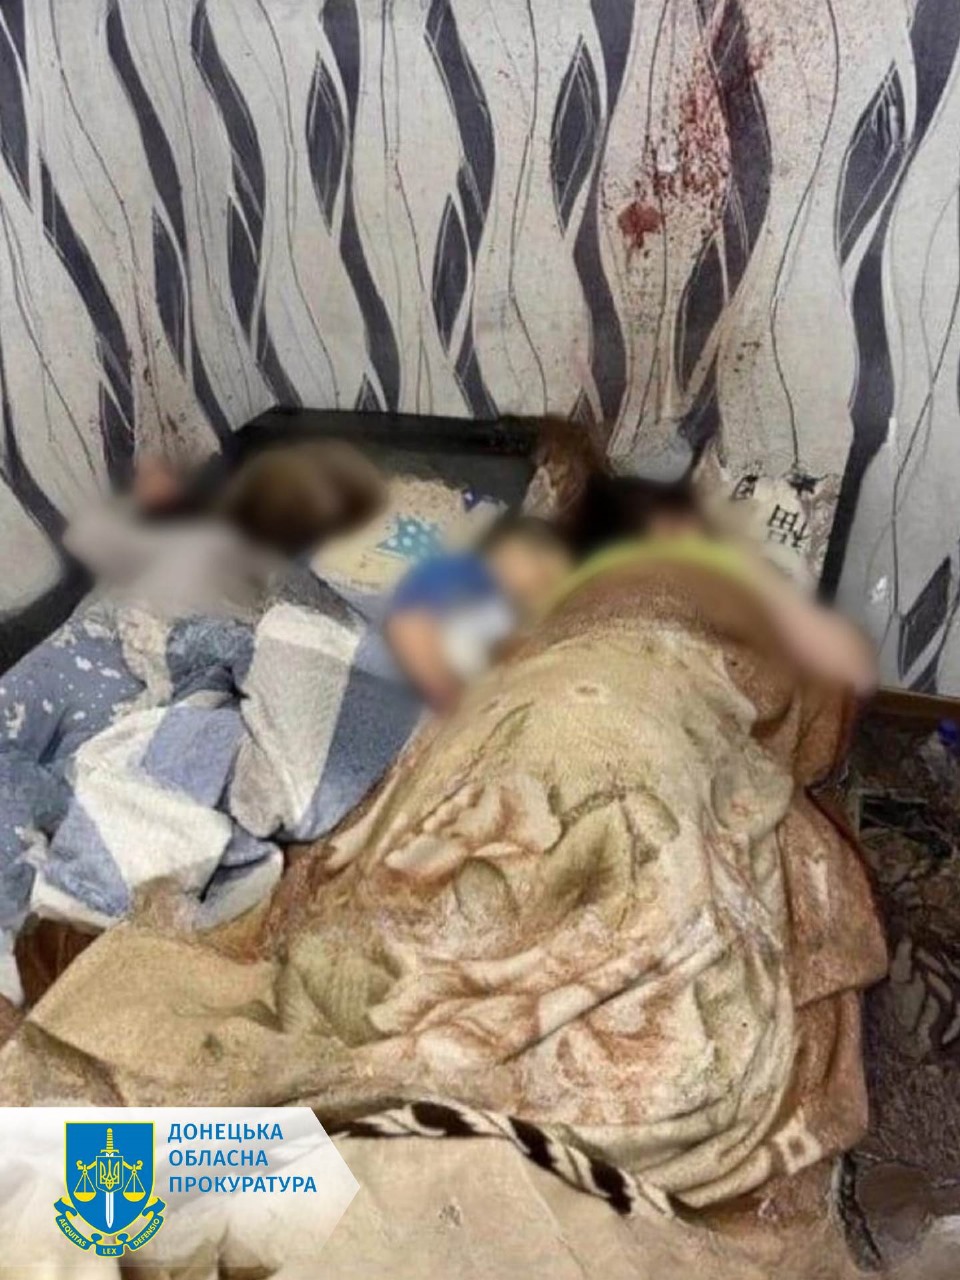 Чеченці розстріляли сплячу родину у Волновасі, вбили дев'ятьох: фото і деталі розслідування